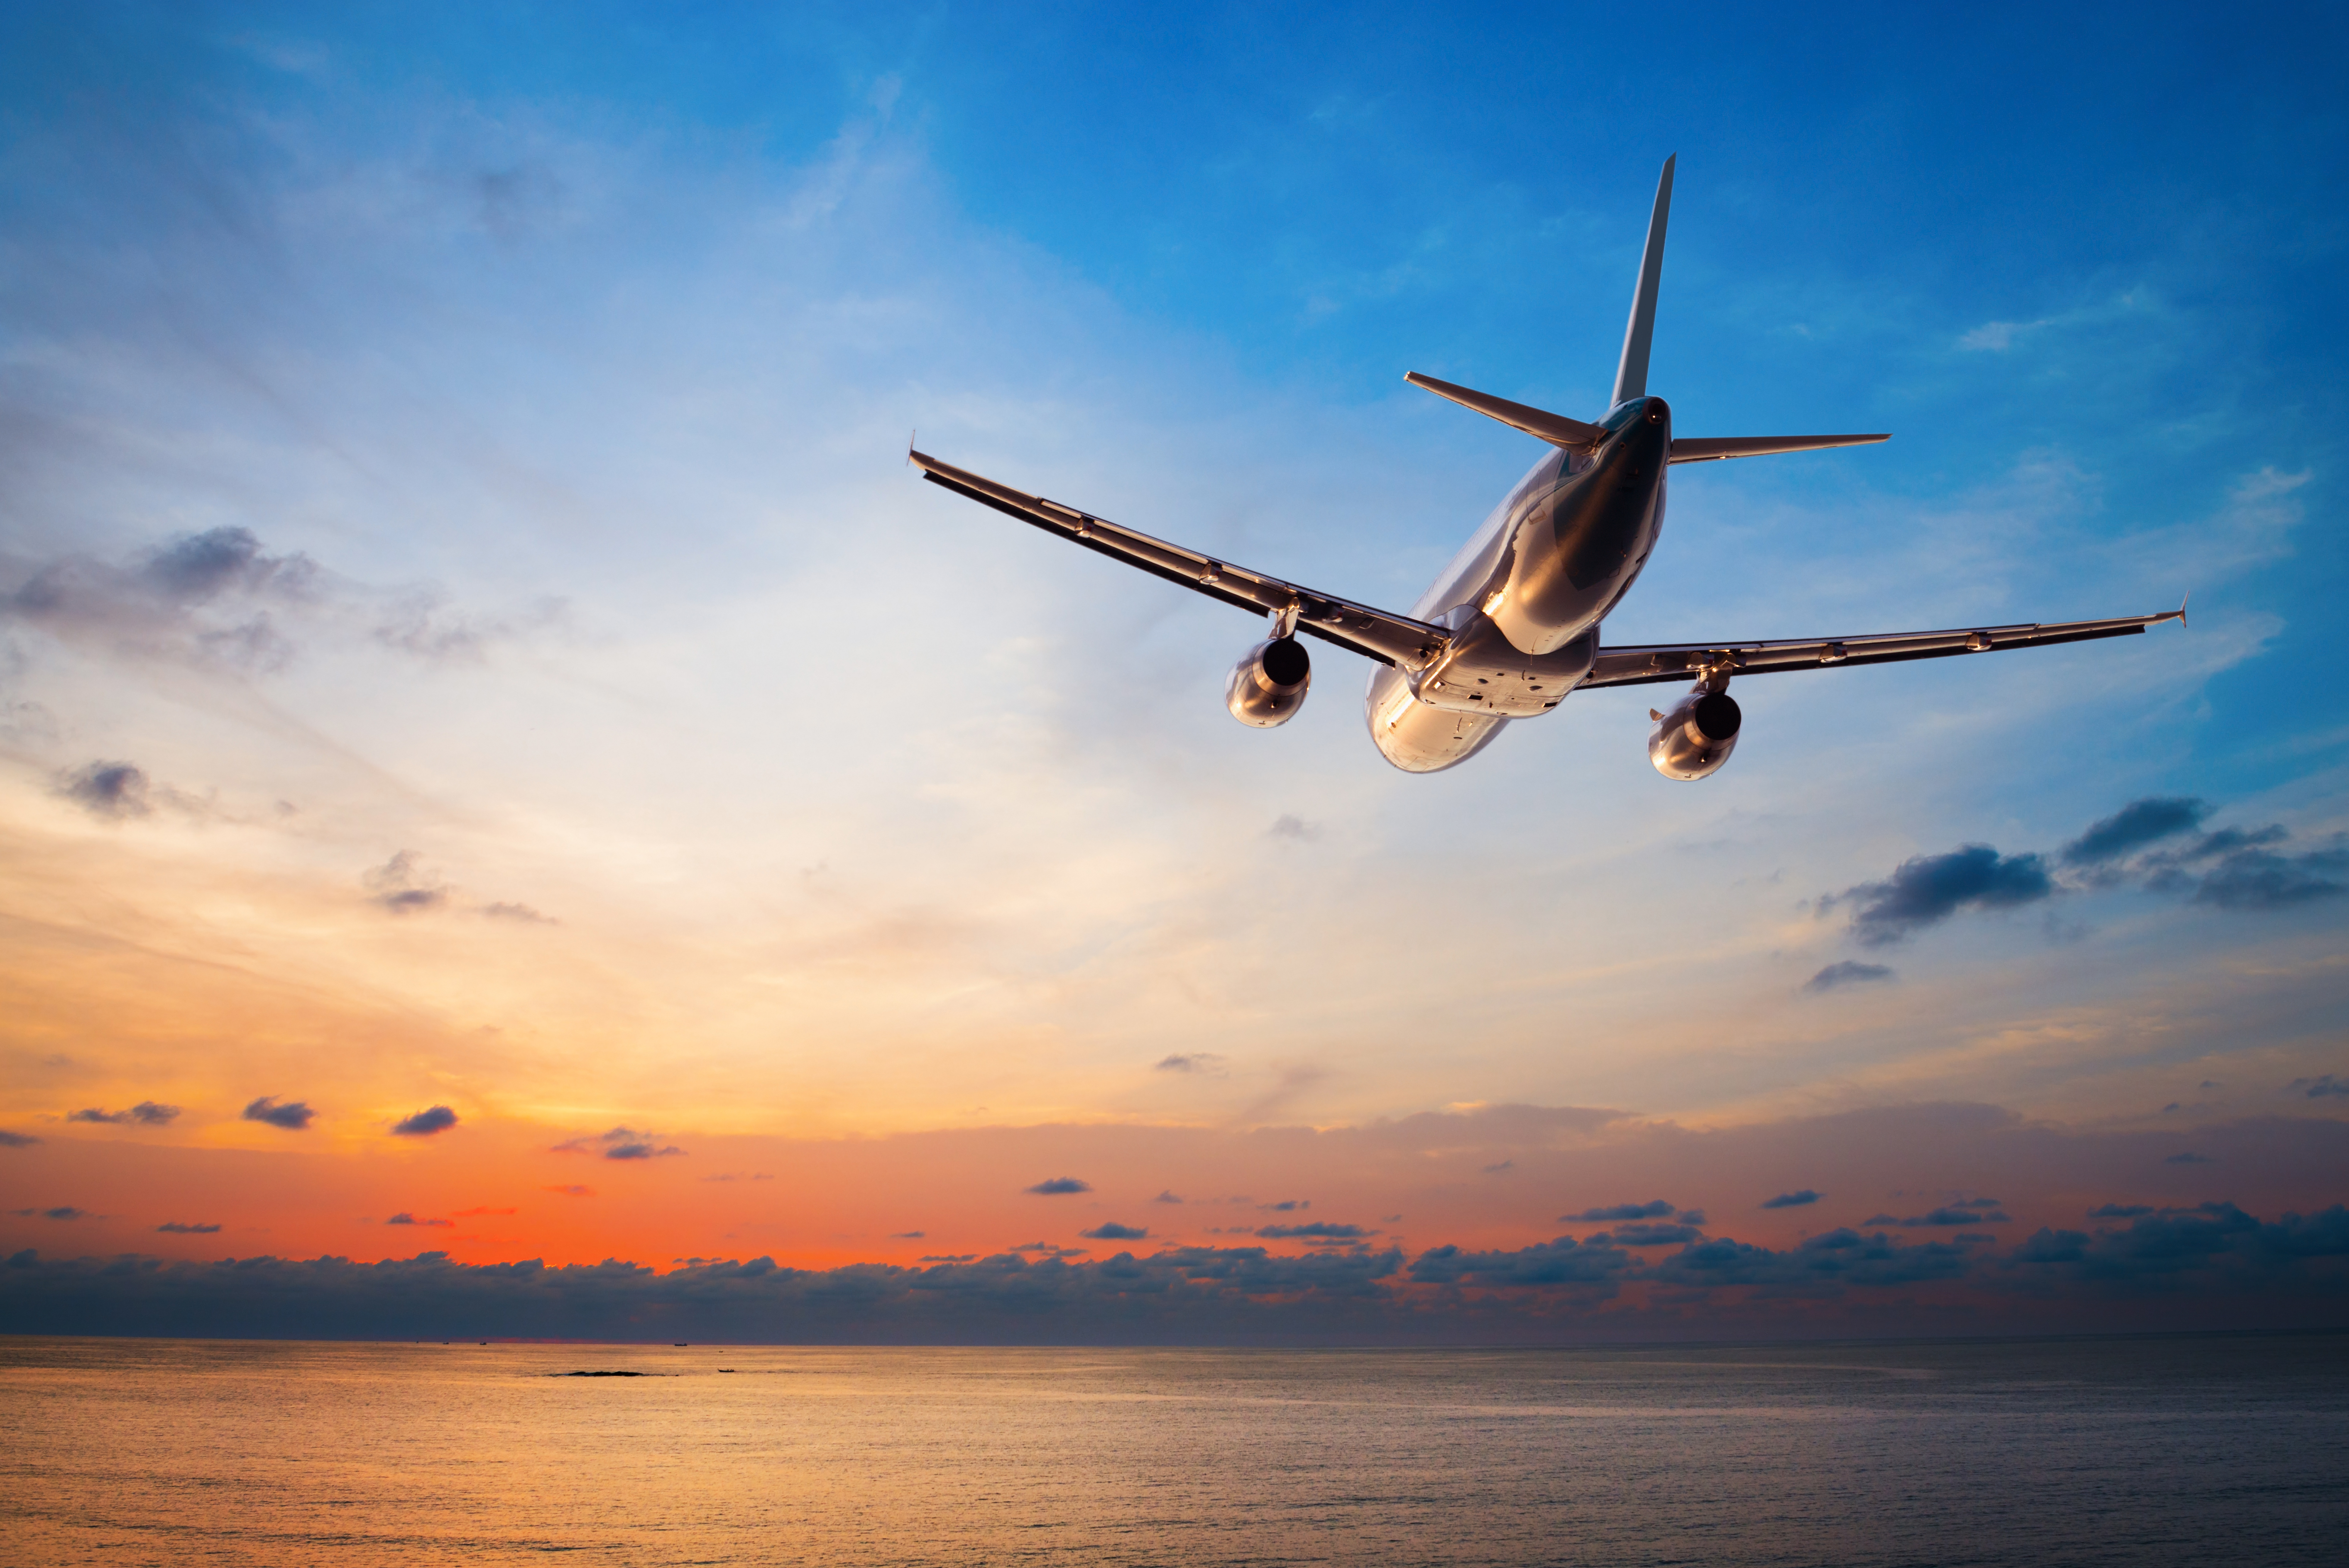 Un avion volant sur fond de coucher de soleil | Source : Shutterstock